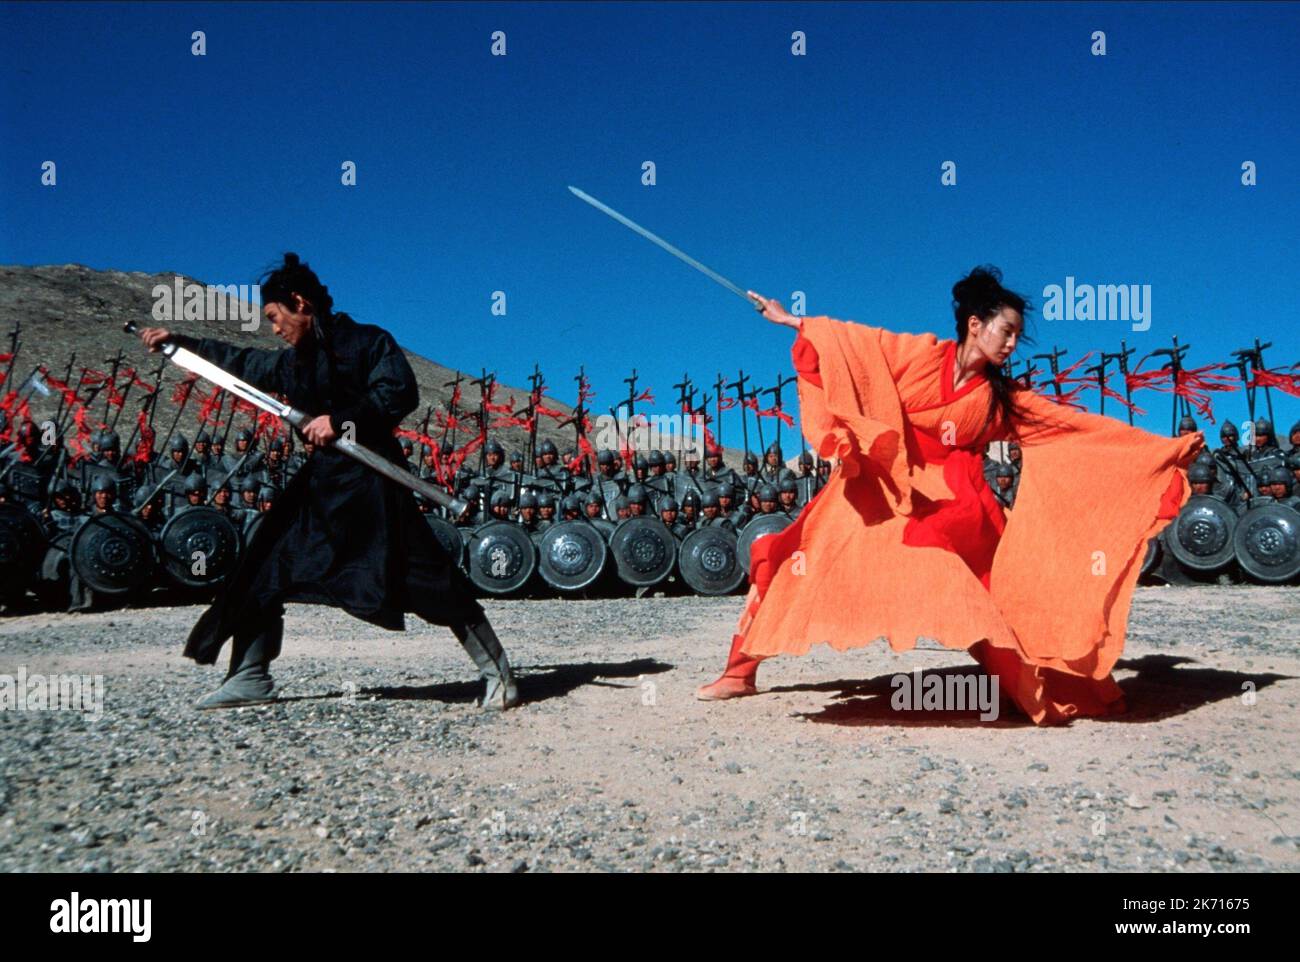 LI,CHEUNG, HERO, 2002 Stock Photo